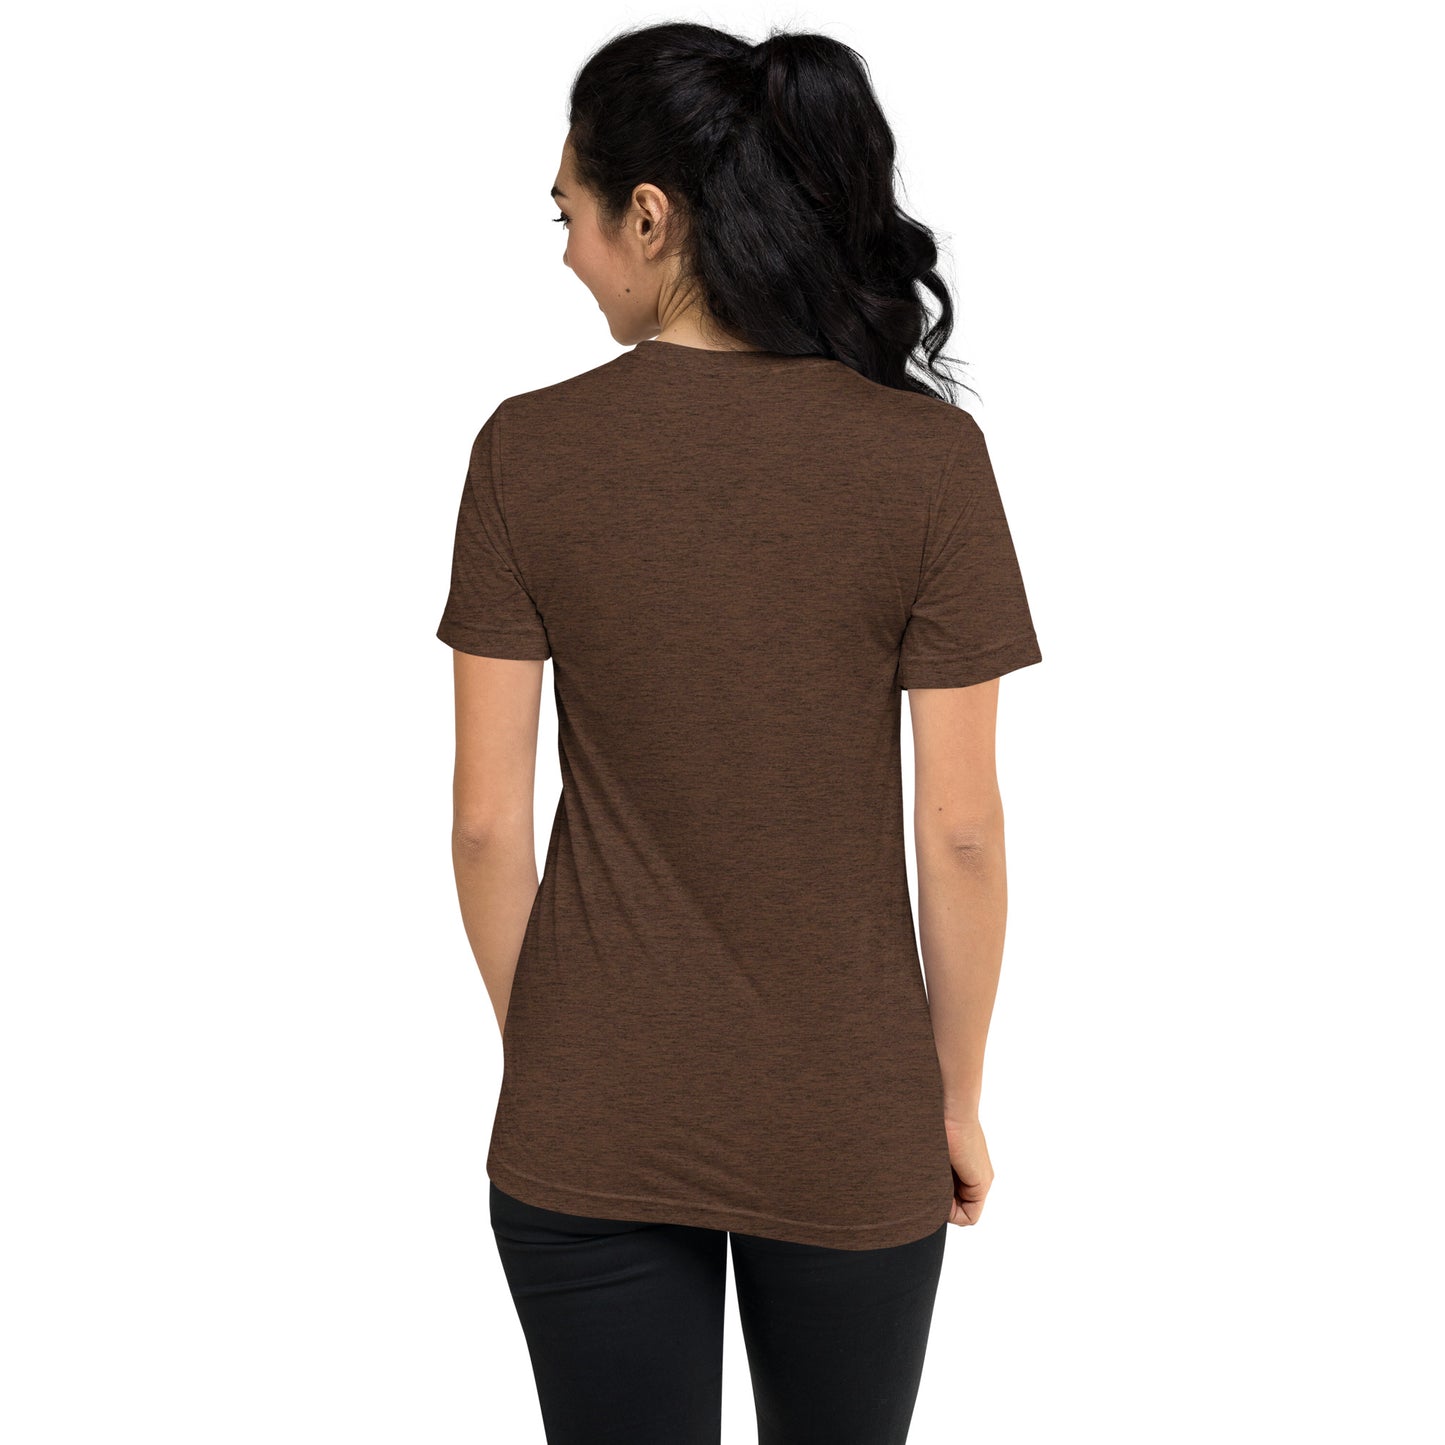 330 Cleveland Short Sleeve Tri-Blend T-Shirt